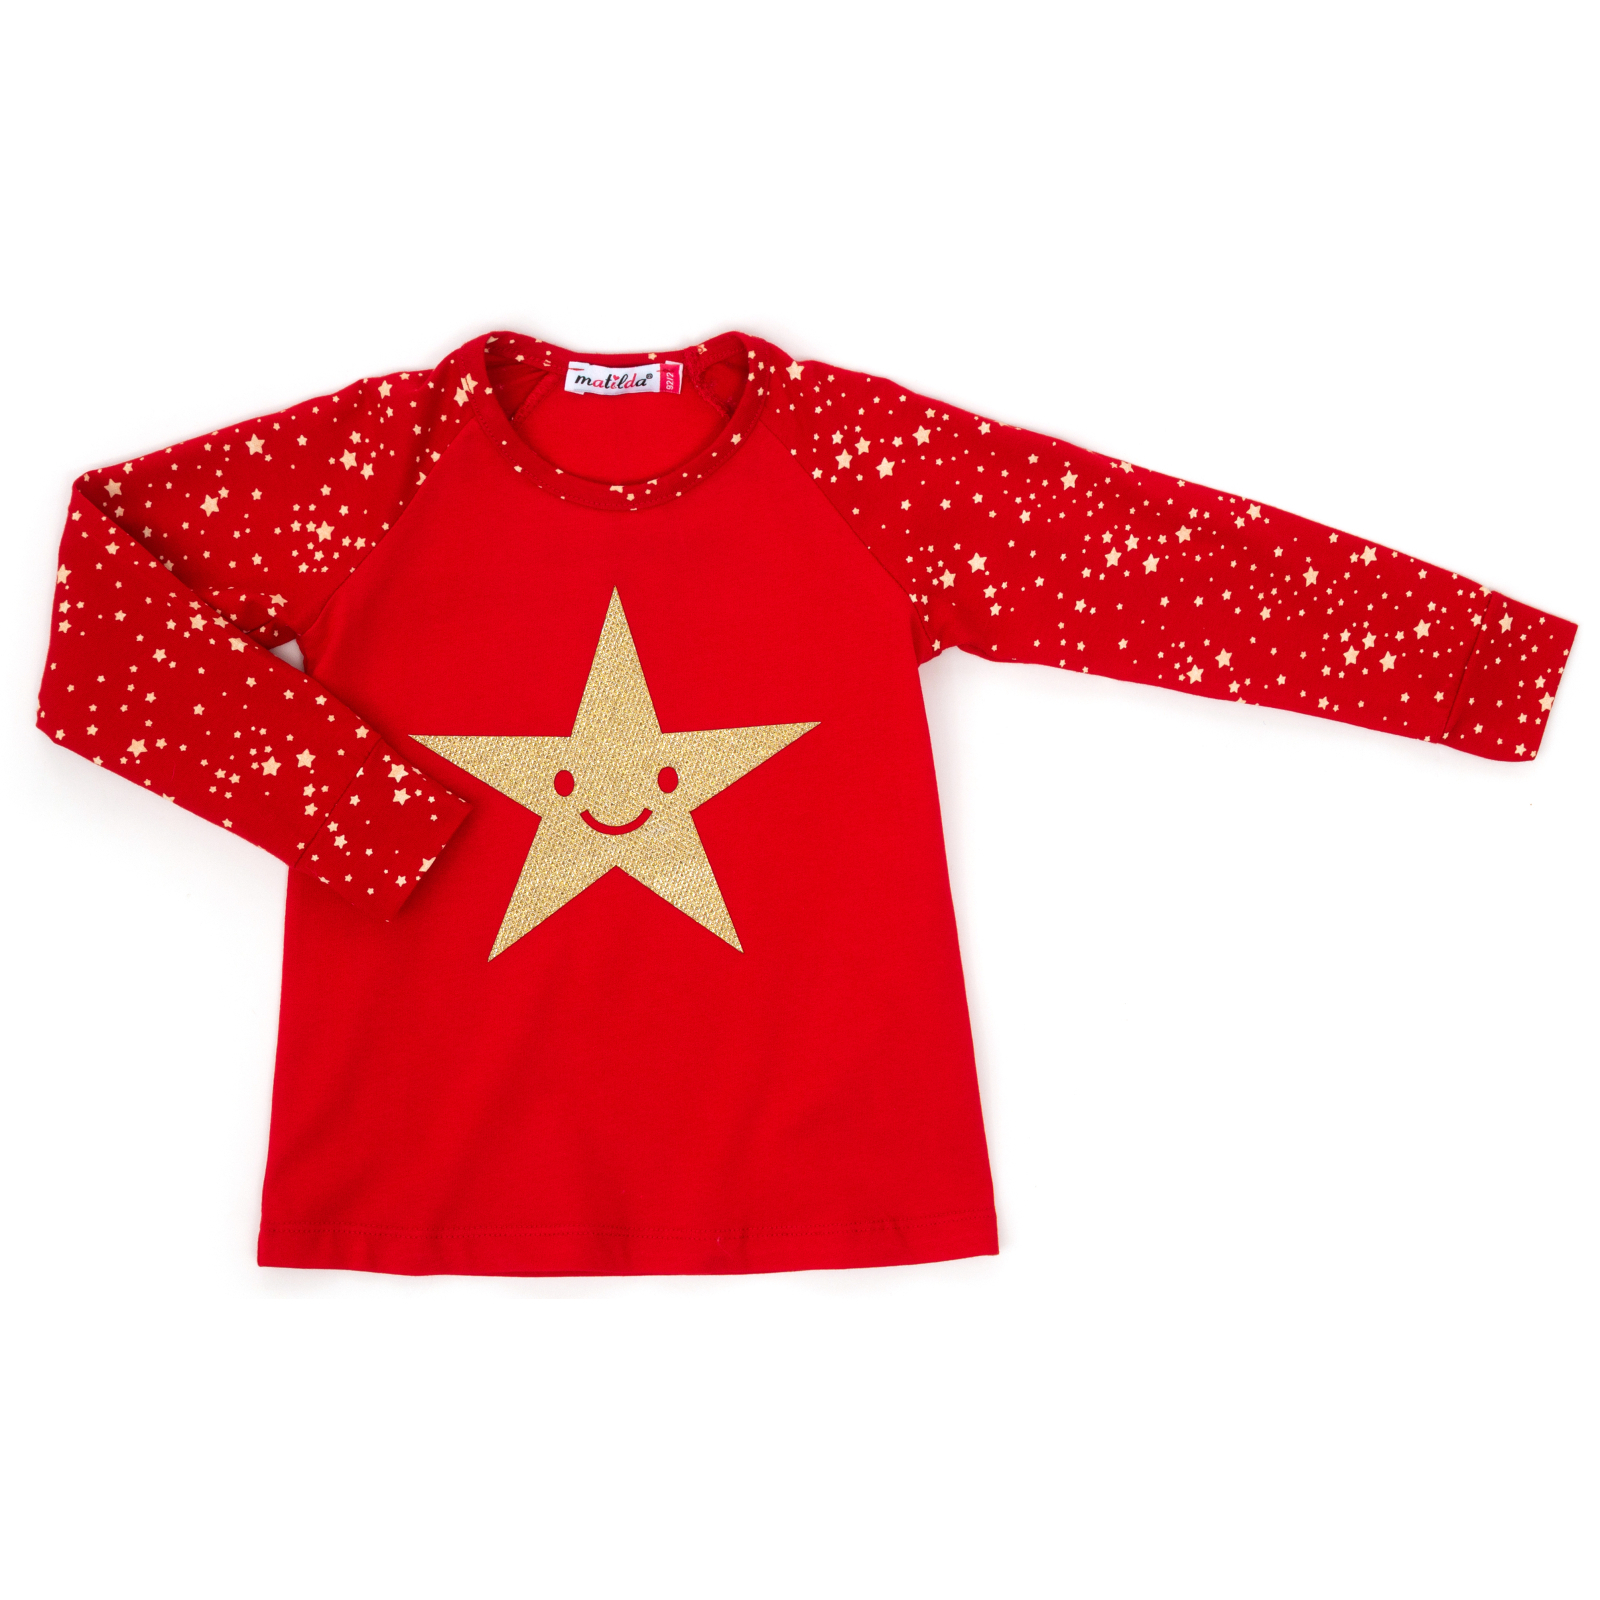 Пижама Matilda со звездочкой (8981-2-98G-red) изображение 3